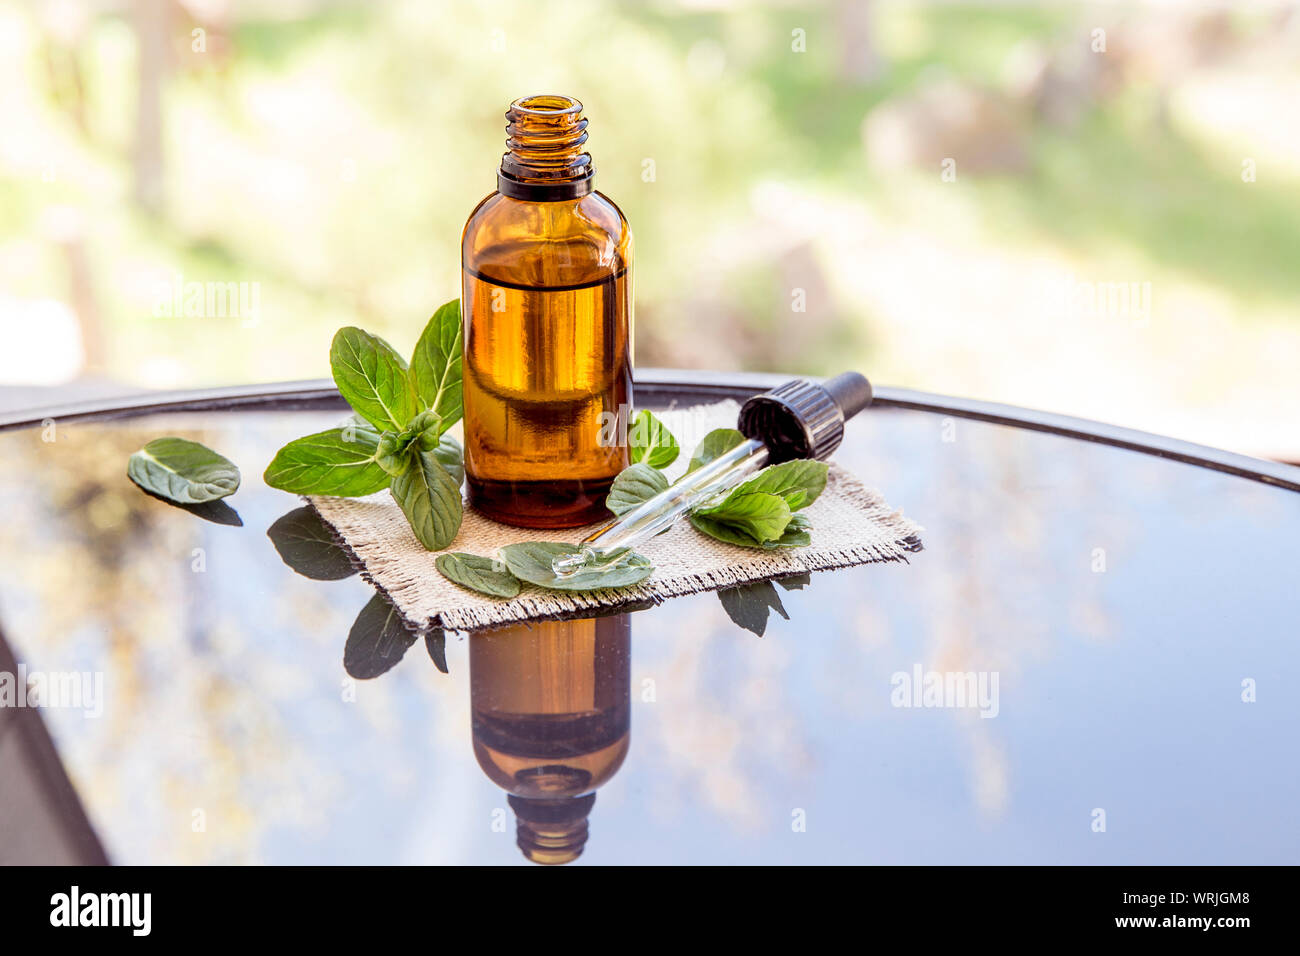 L'huile essentielle de menthe poivrée ou de l'infusion en bouteille pipette médicale brun avec des branches de menthe fraîche sur une table en verre, l'arrière-plan flou. Banque D'Images